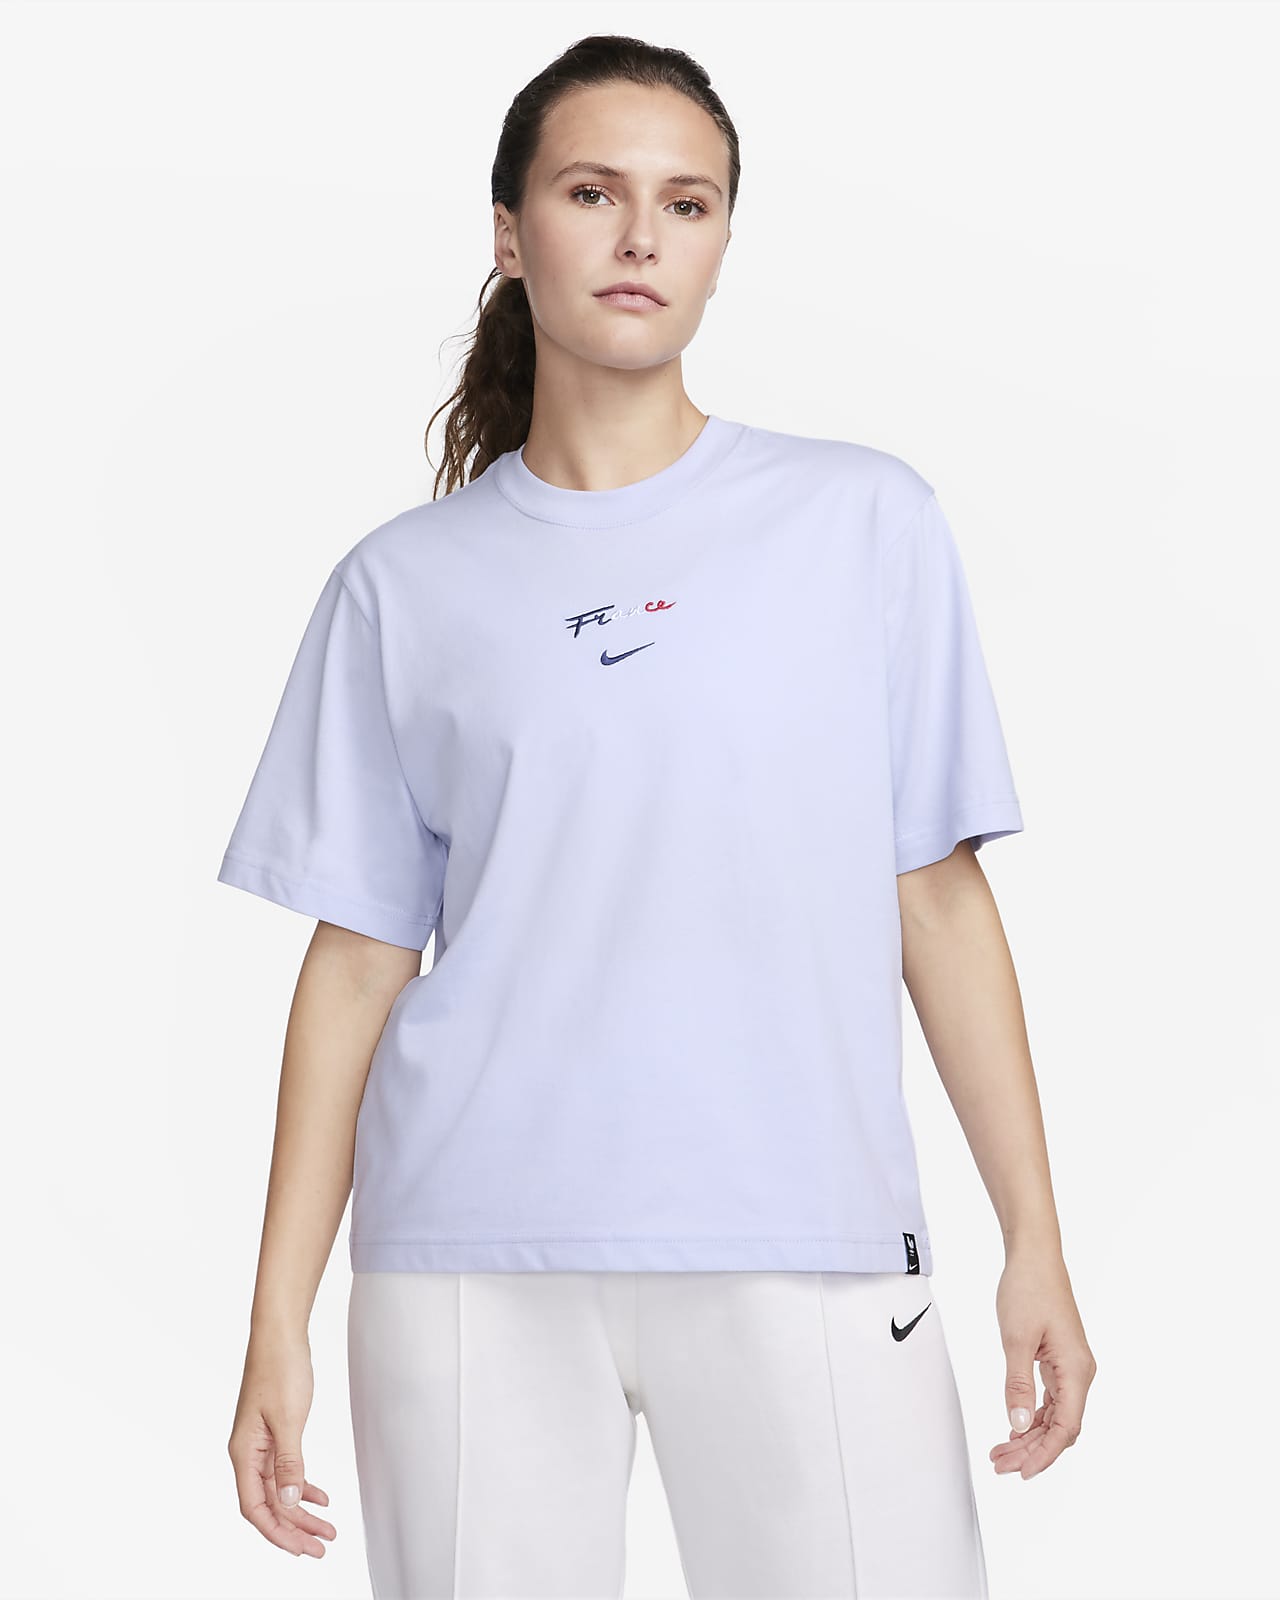 Dyrke motion dyb Hold sammen med FFF Women's T-Shirt. Nike.com